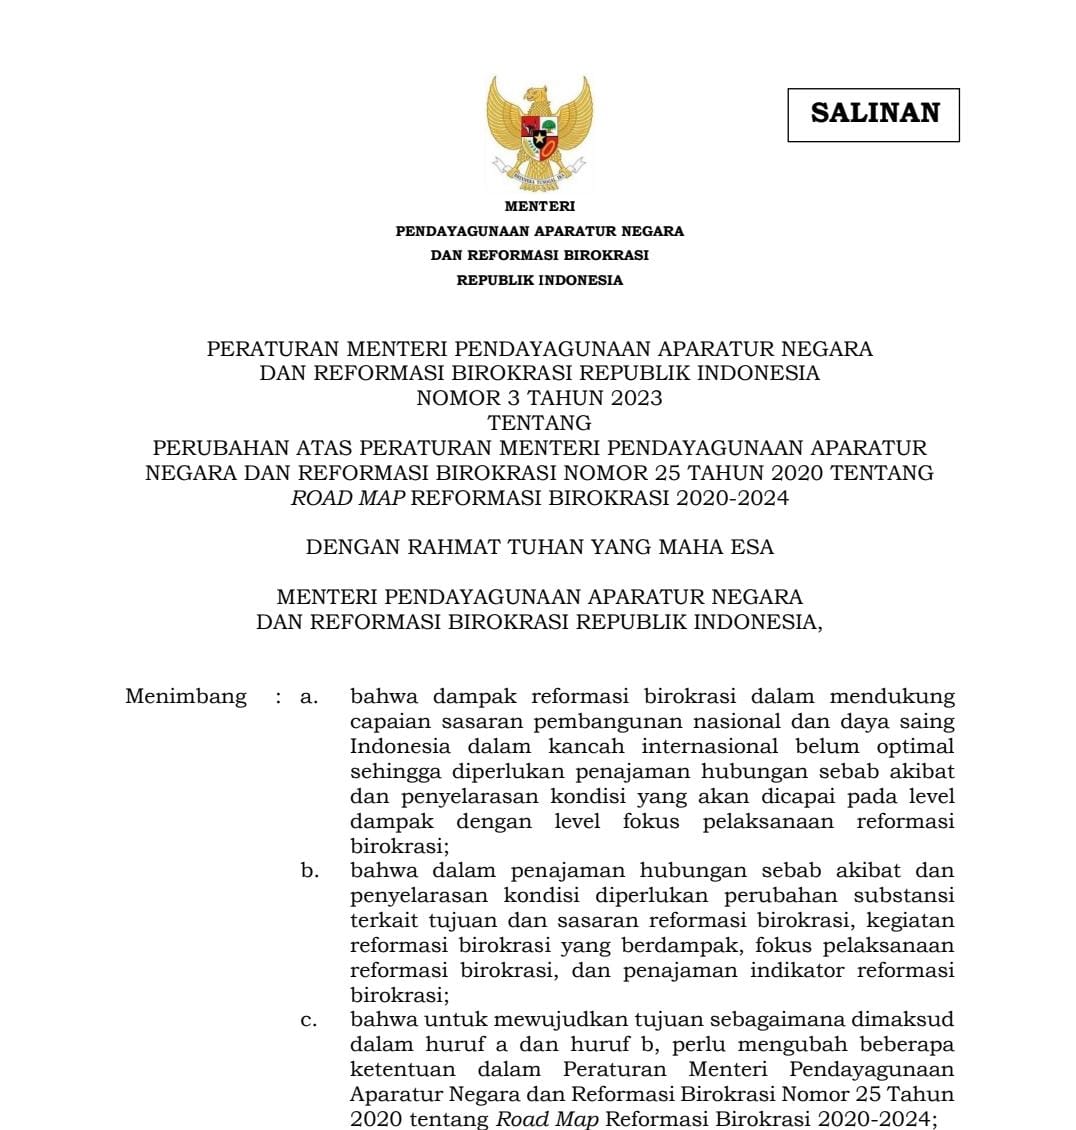 Peraturan Menteri Pendayagunaan Aparatur Negara dan Reformasi Birokrasi Republik Indonesia Nomor 3 Tahun 2023